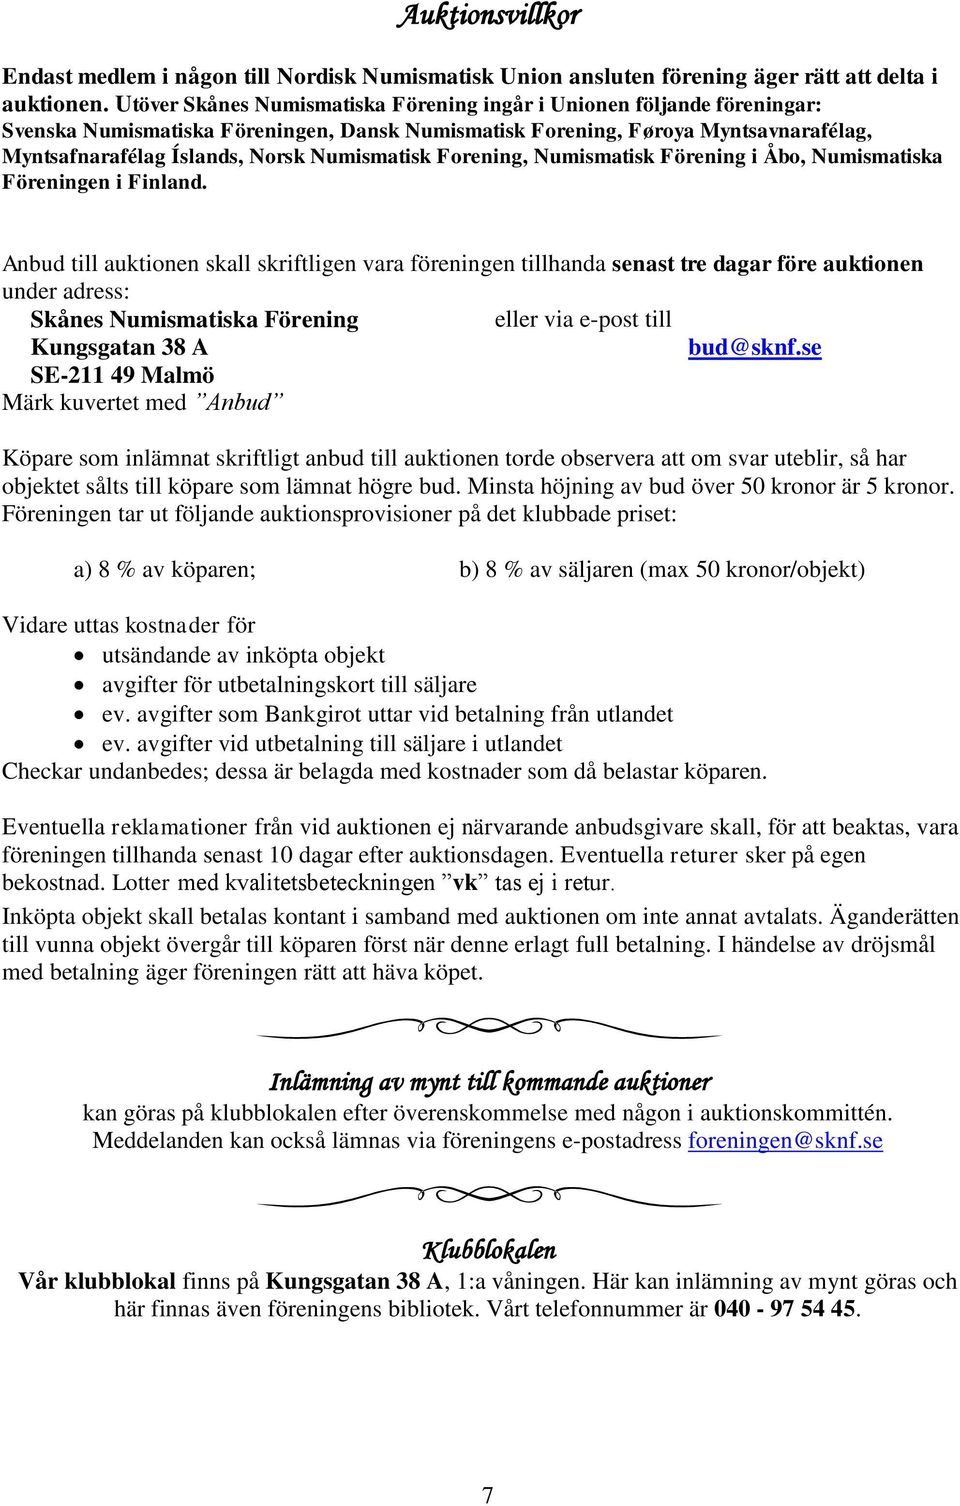 Numismatisk Forening, Numismatisk Förening i Åbo, Numismatiska Föreningen i Finland.